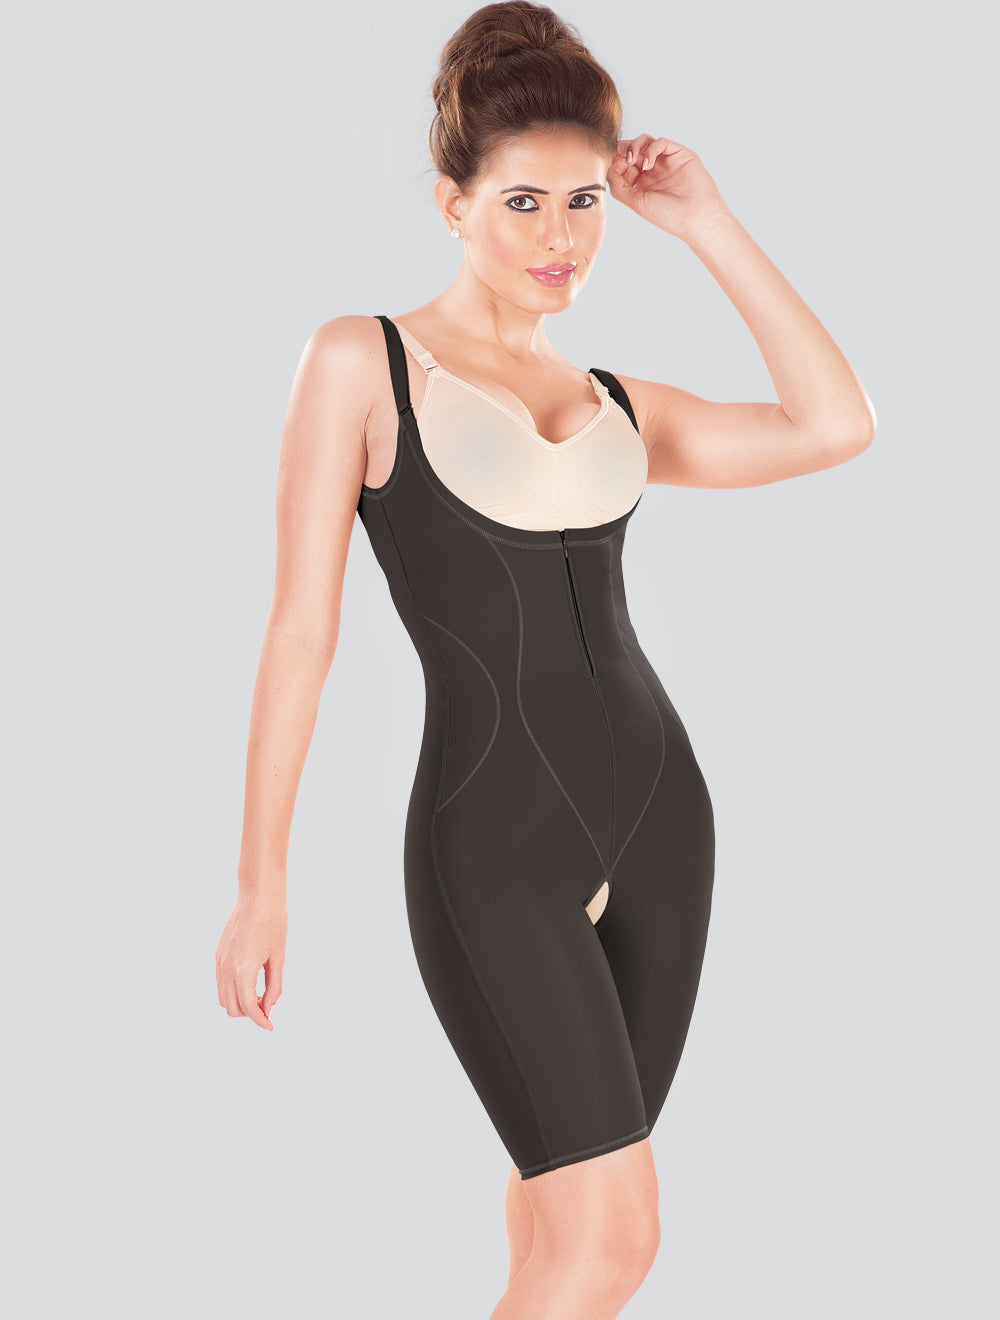 Shapewear Bodysuit For Women Tummy Control Body Suit Full Body Shap